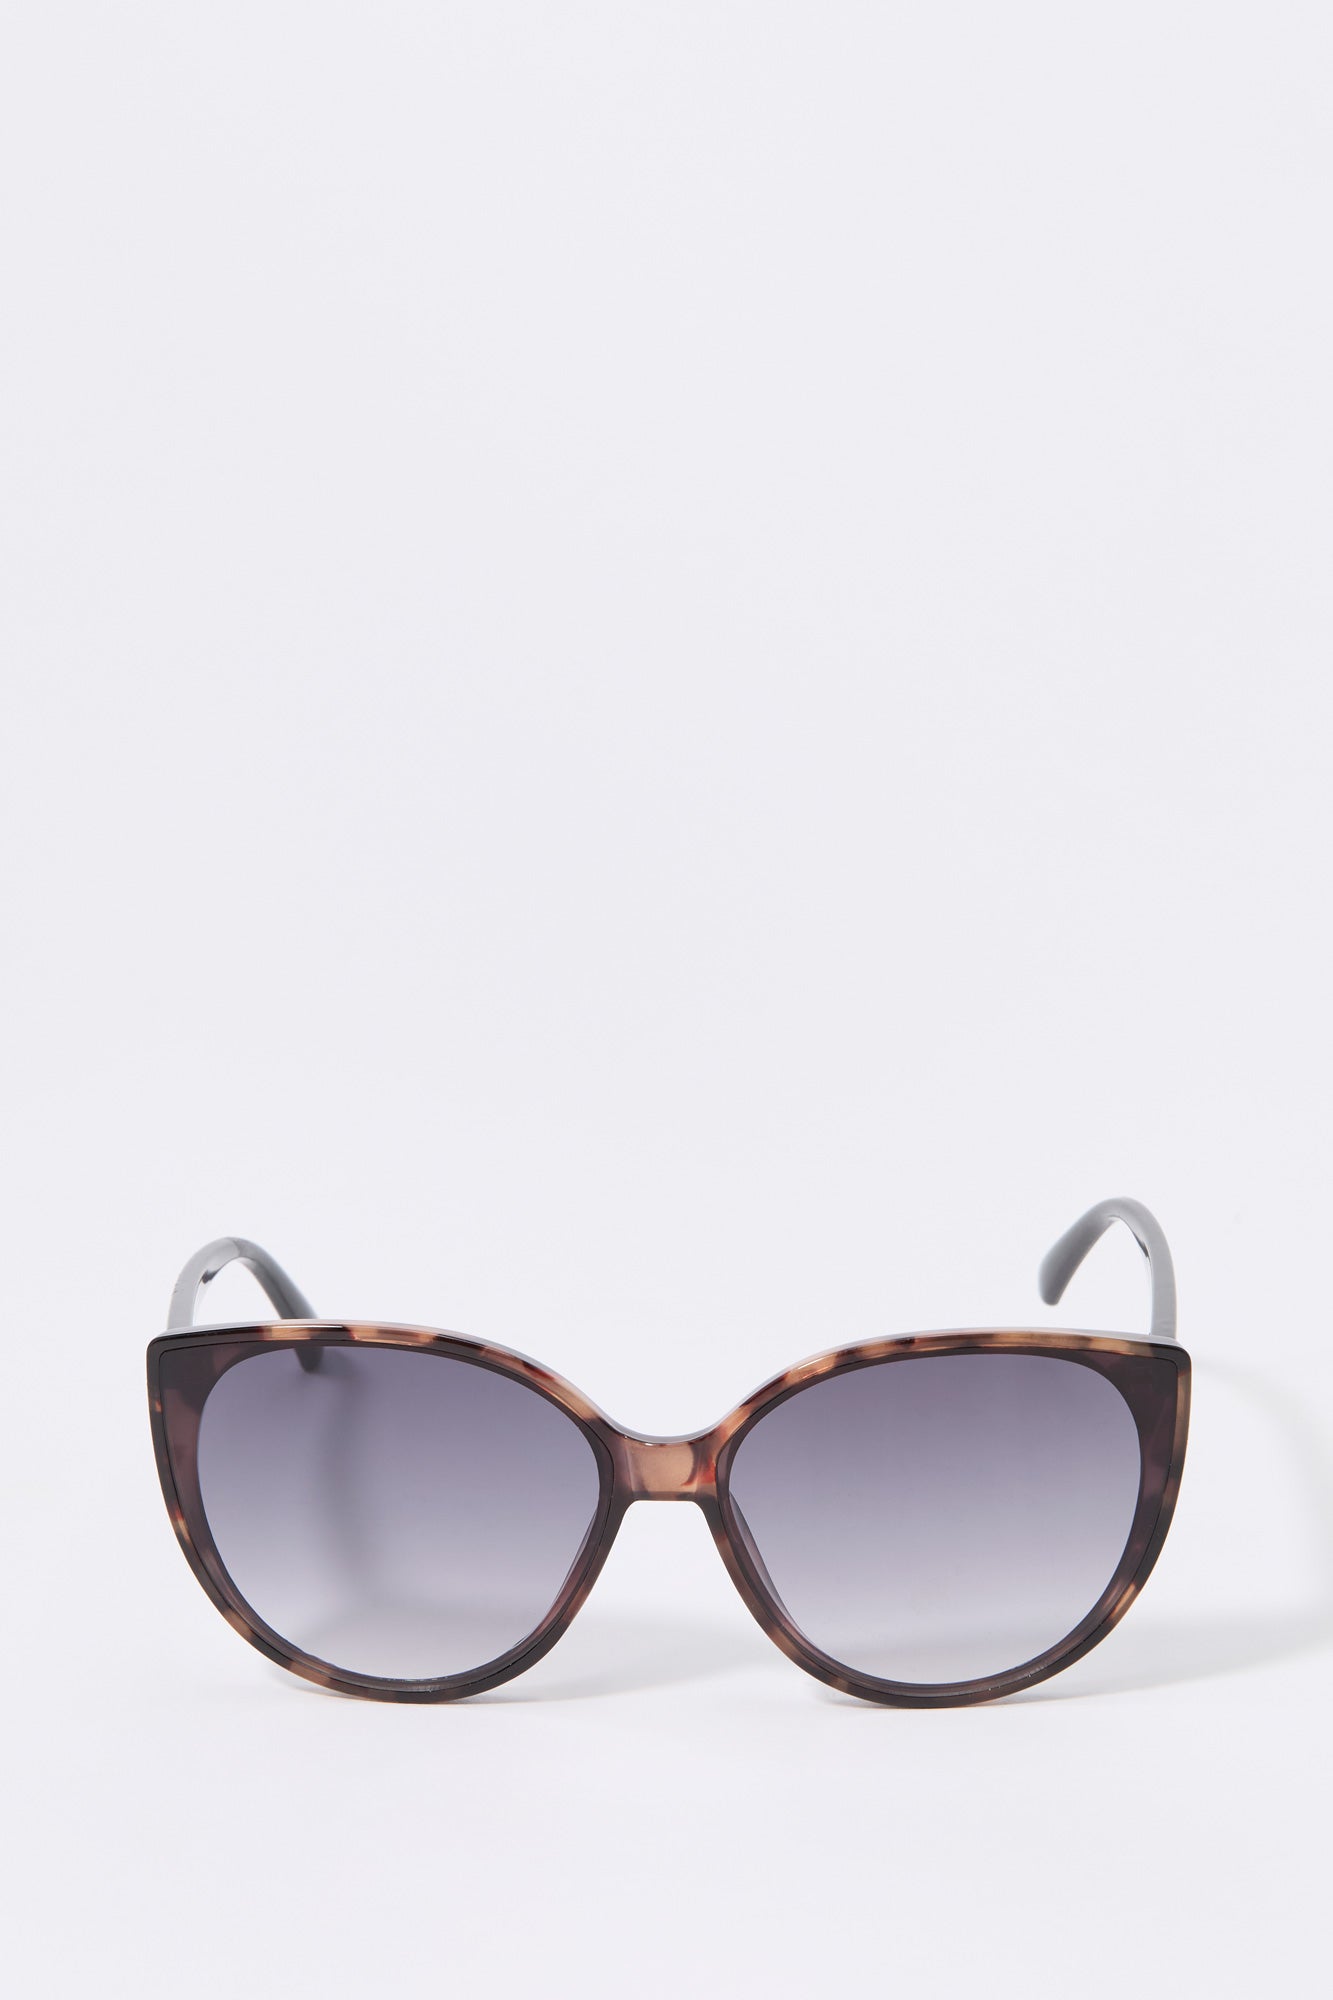 Tortoiseshell Cat Eye Sunglasses